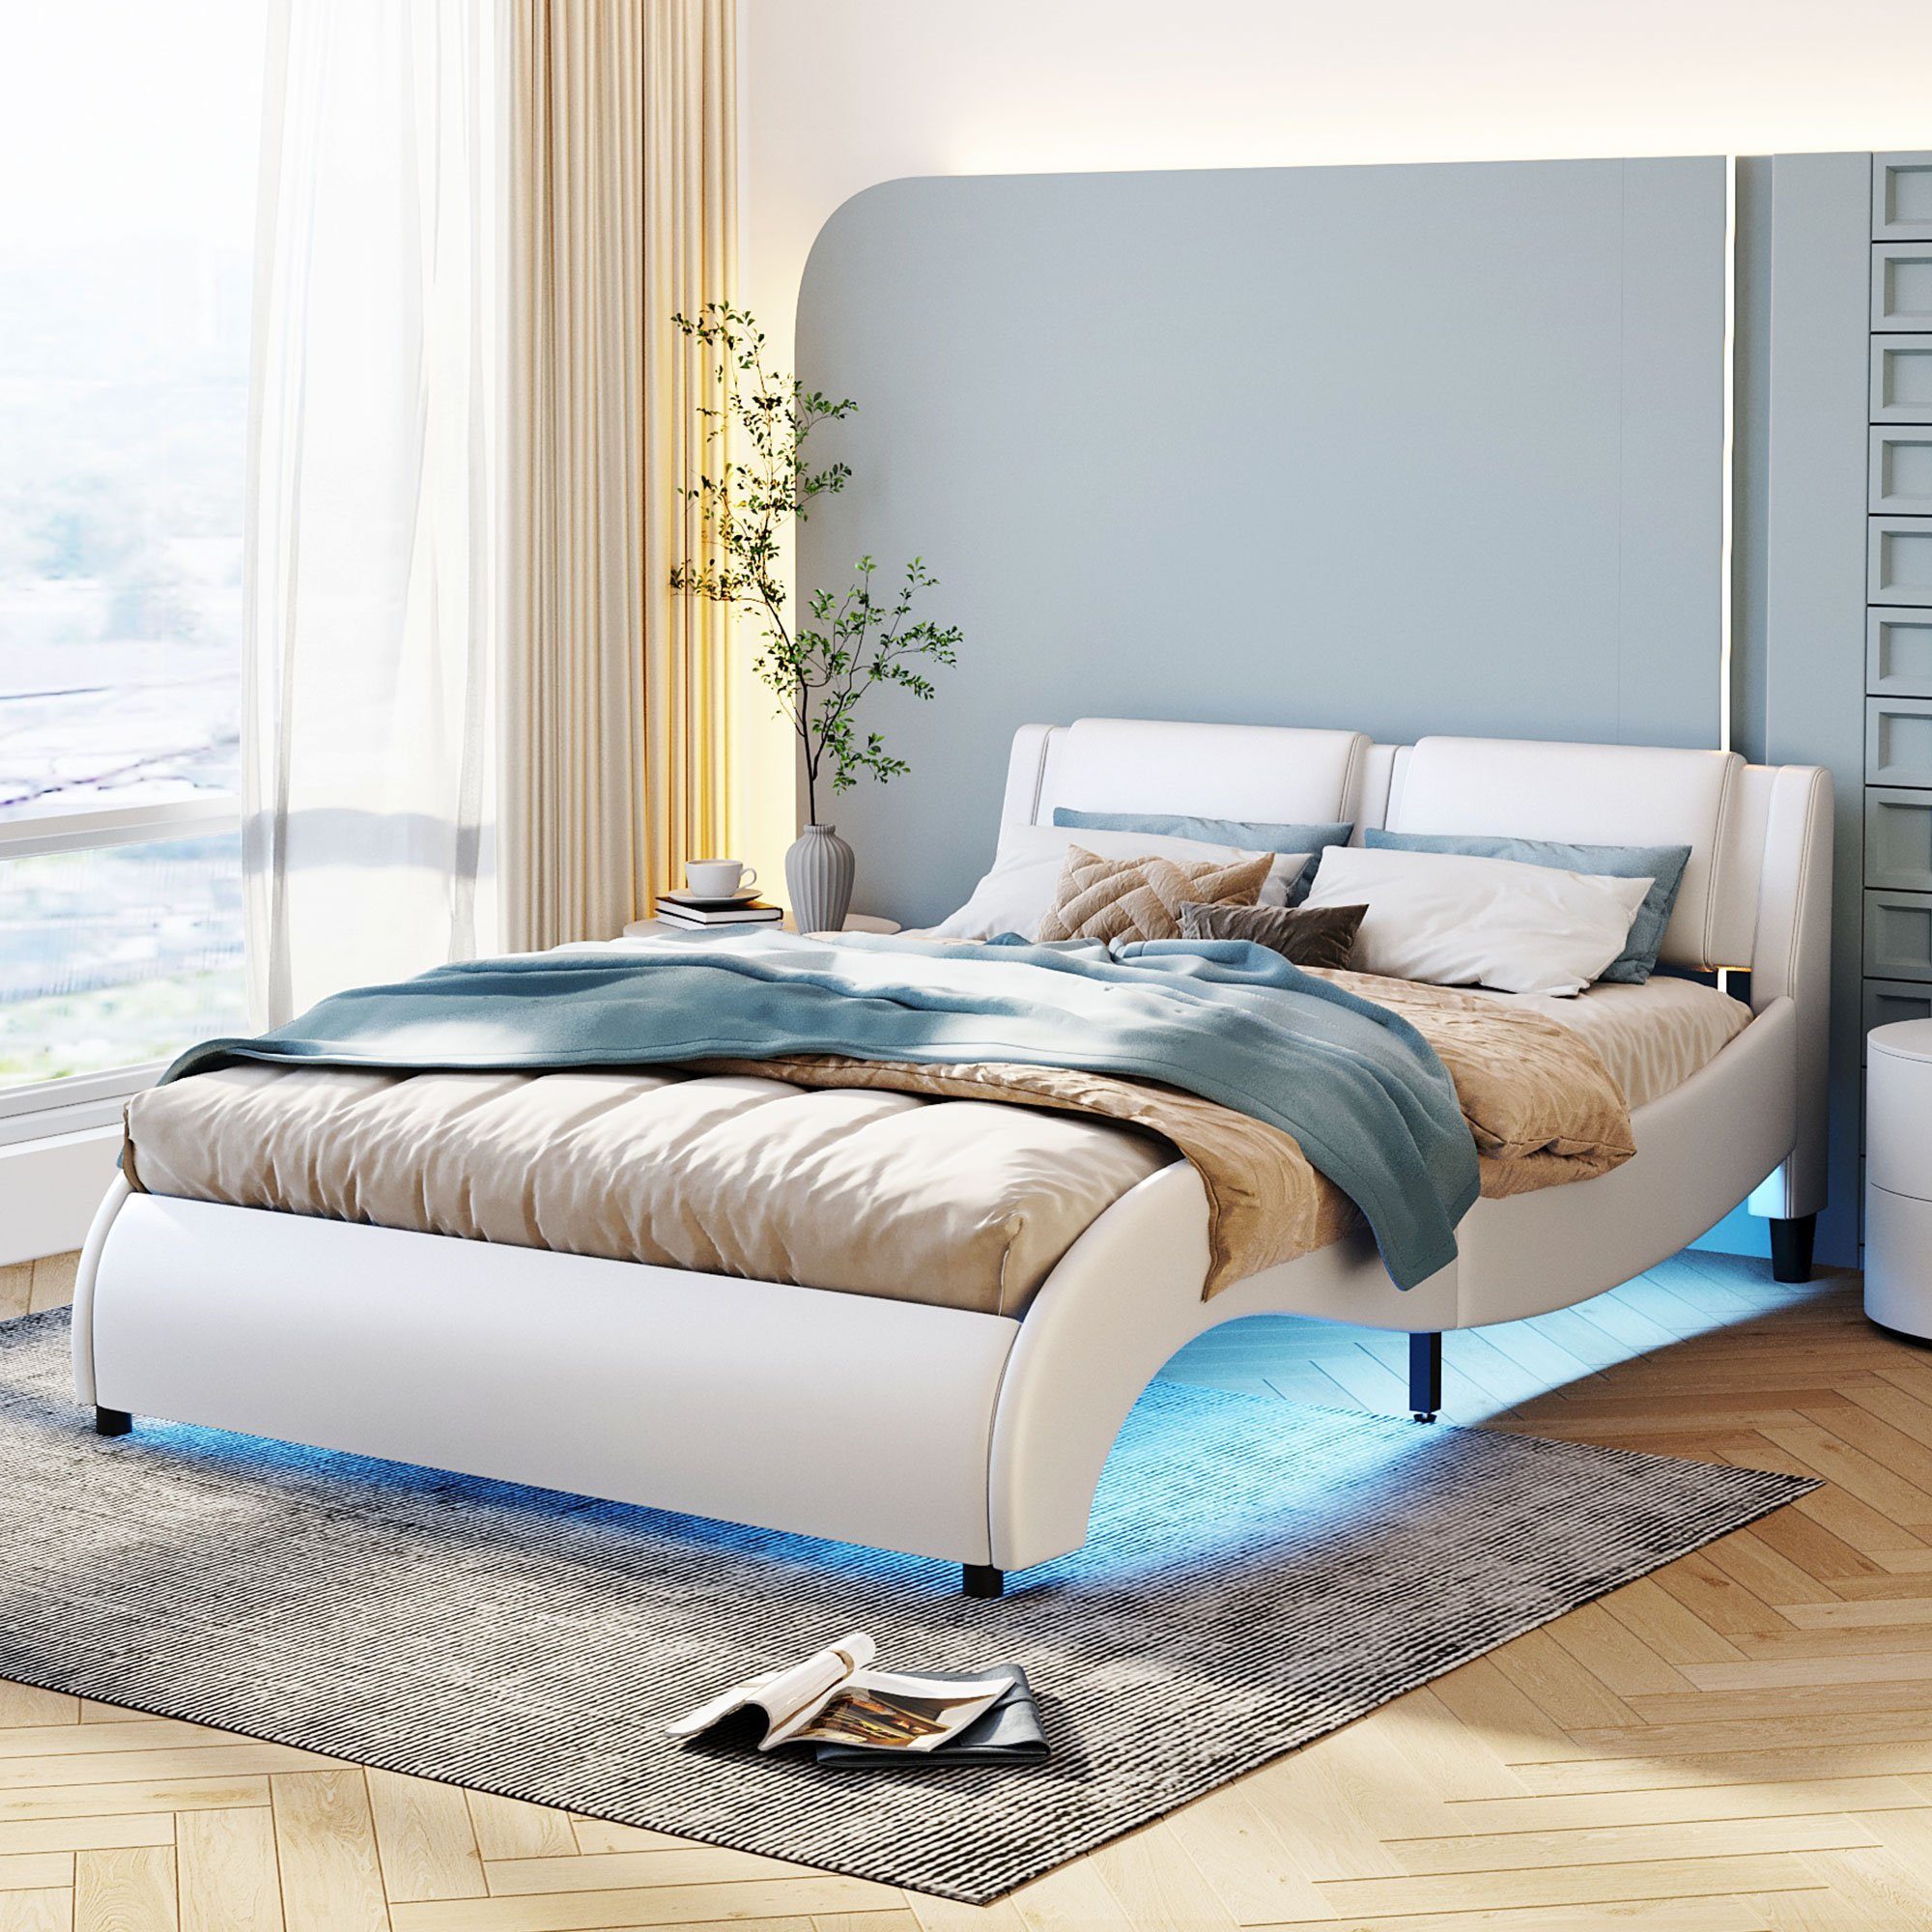 Flieks Polsterbett, LED Beleuchtung Doppelbett mit Bogendesign 140x200cm Kunstleder Weiß